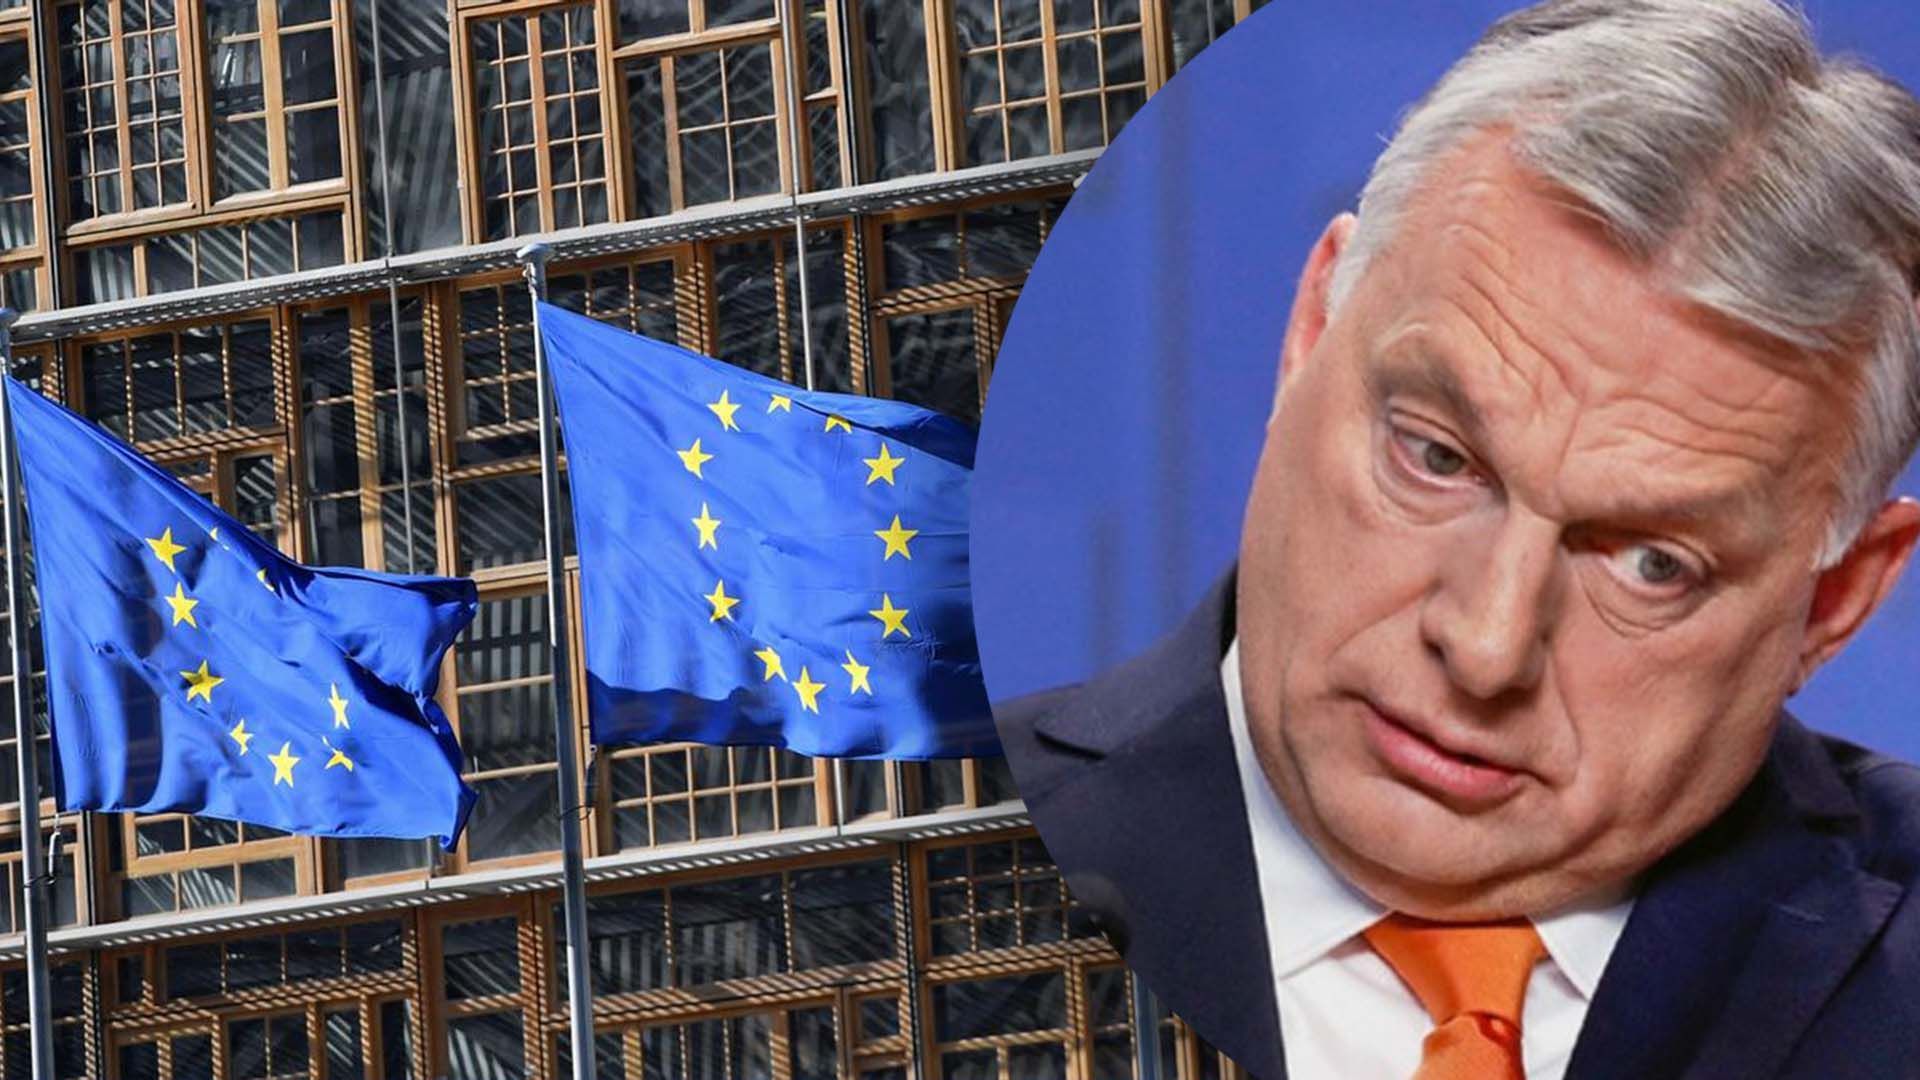 18 миллиардов евро помощи Украине от ЕС - Орбан будет блокировать предоставление денег - причина - 24 Канал